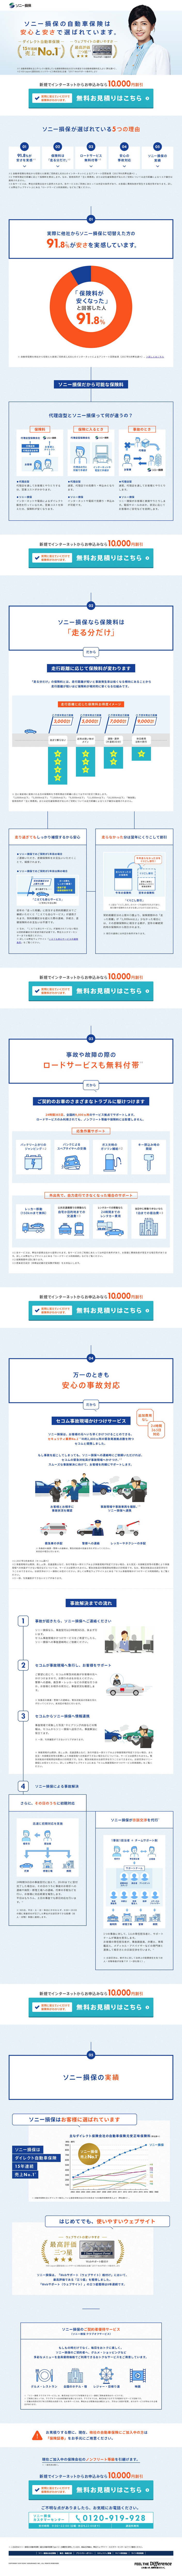 ソニー損保の自動車保険は安心と安さで選ばれています Sankou Webデザインギャラリー 参考サイト集